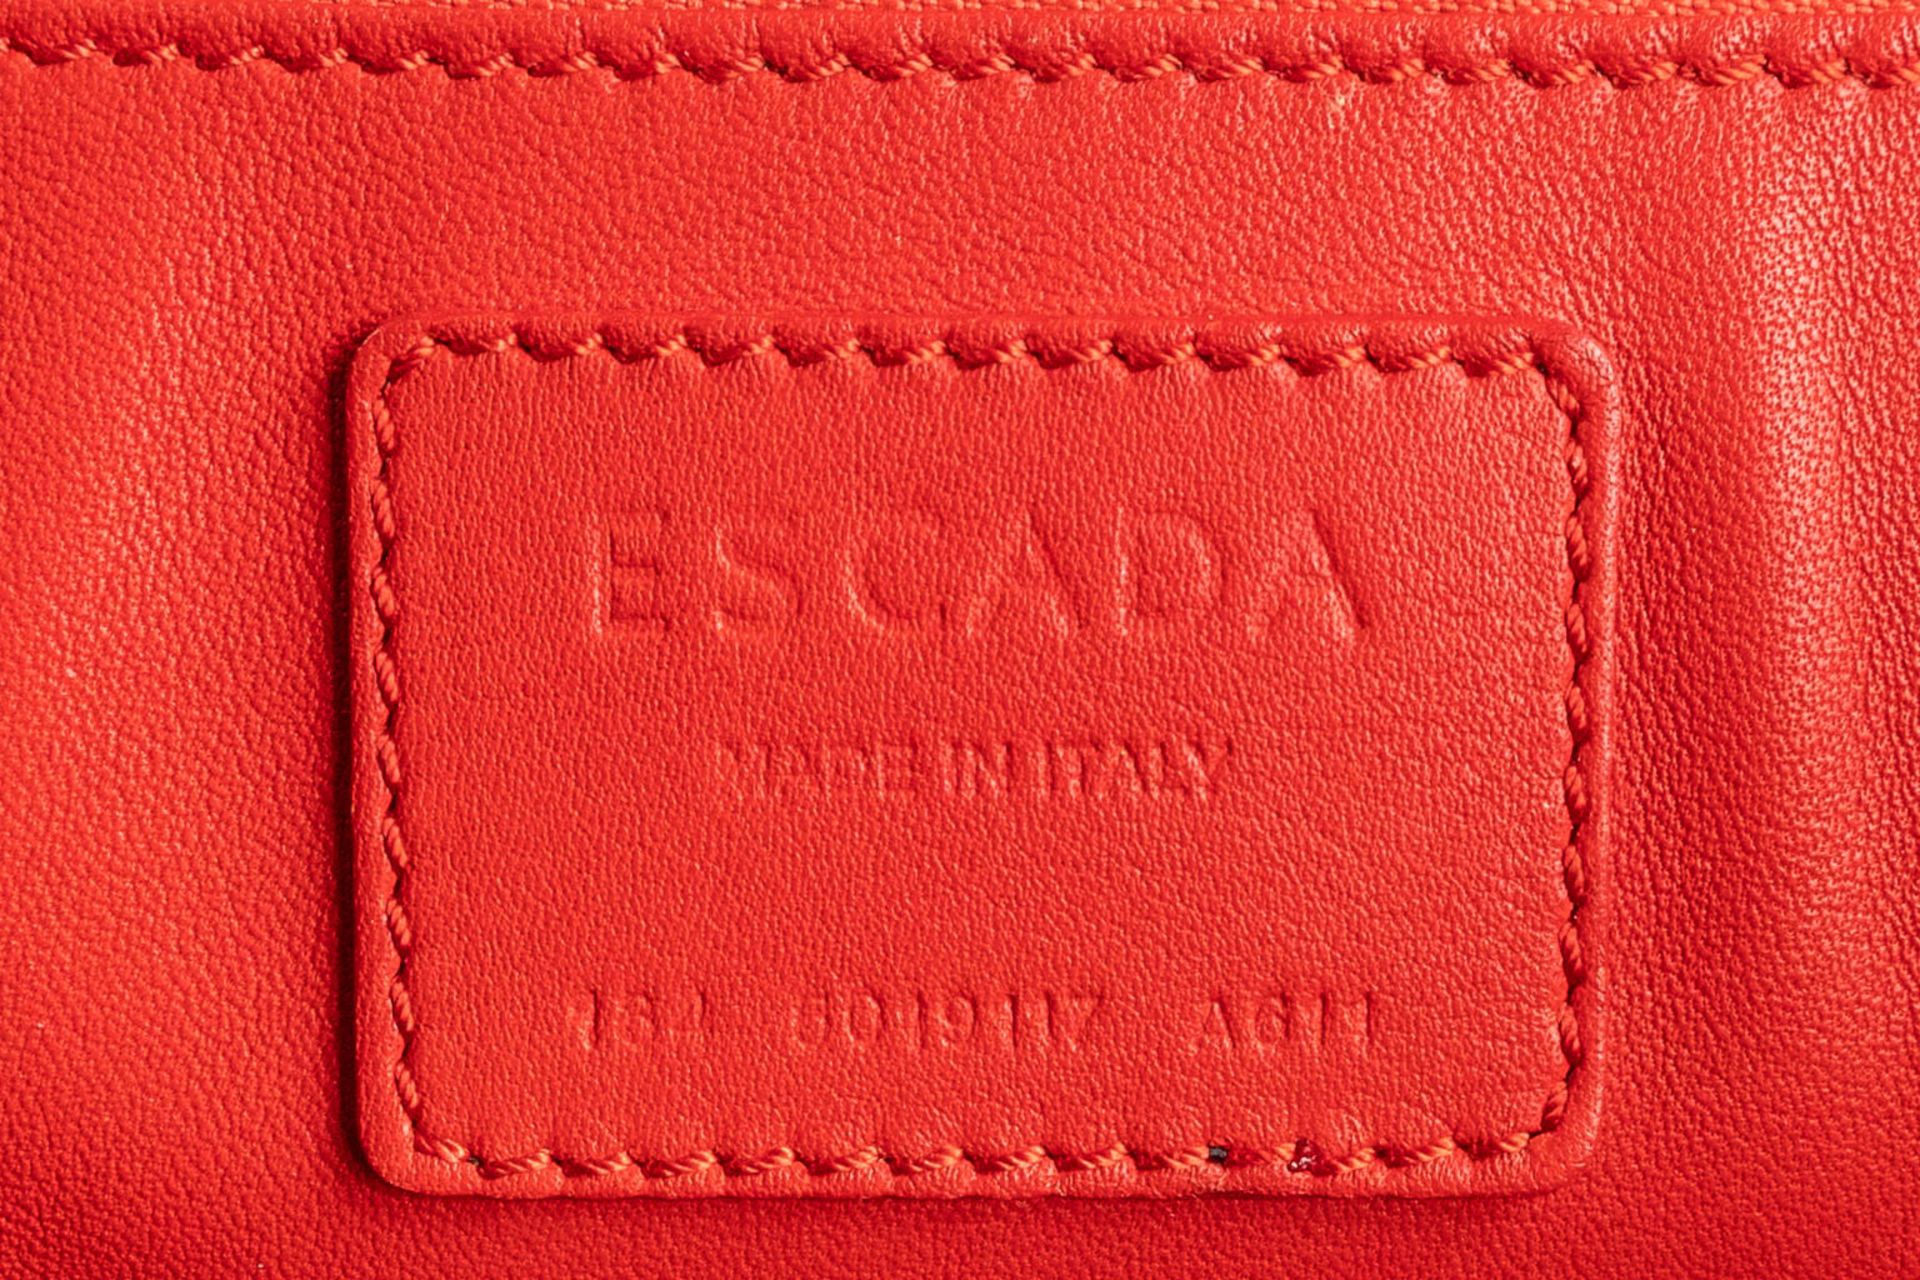 Escada, a handbag made of red leather. (W:33 x H:28 cm) - Image 16 of 17